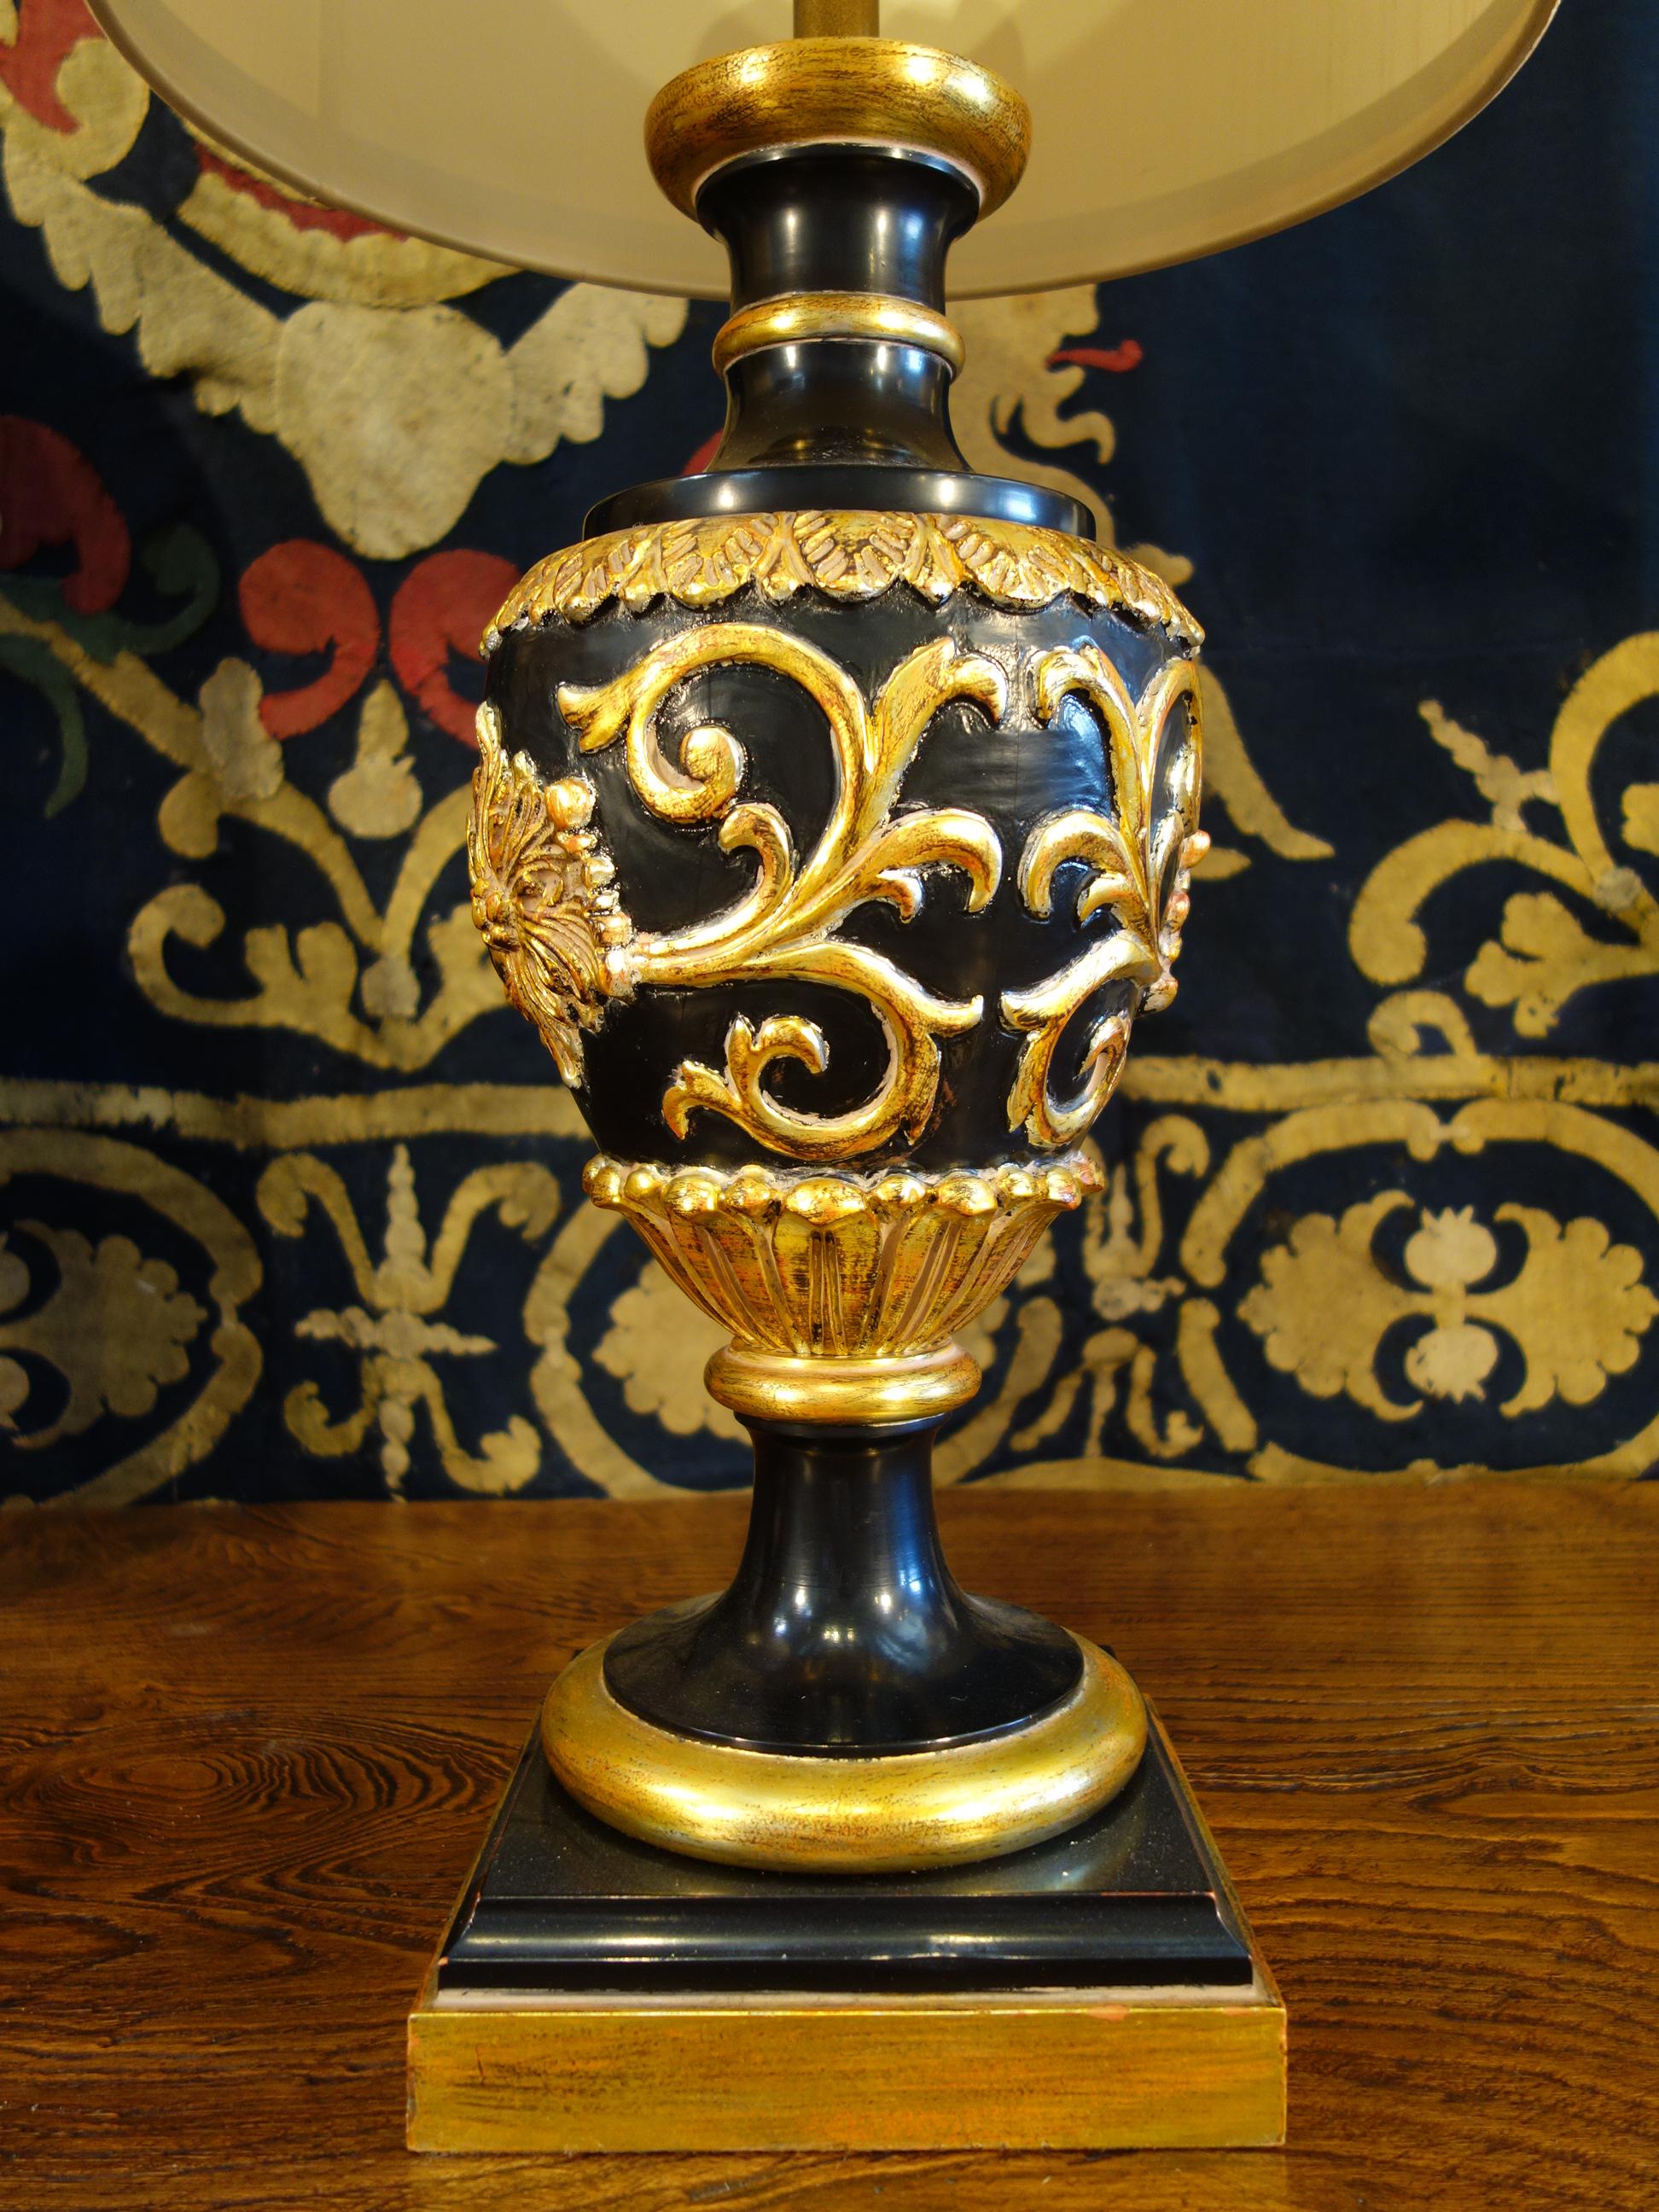 Paire monumentale de lampes de table dorées de style Renaissance italienne par la célèbre Marbro Lamp Company de Los Angeles USA, vers 1950.
Laqué noir et doré à l'or fin. Chaque lampe mesure 42,5